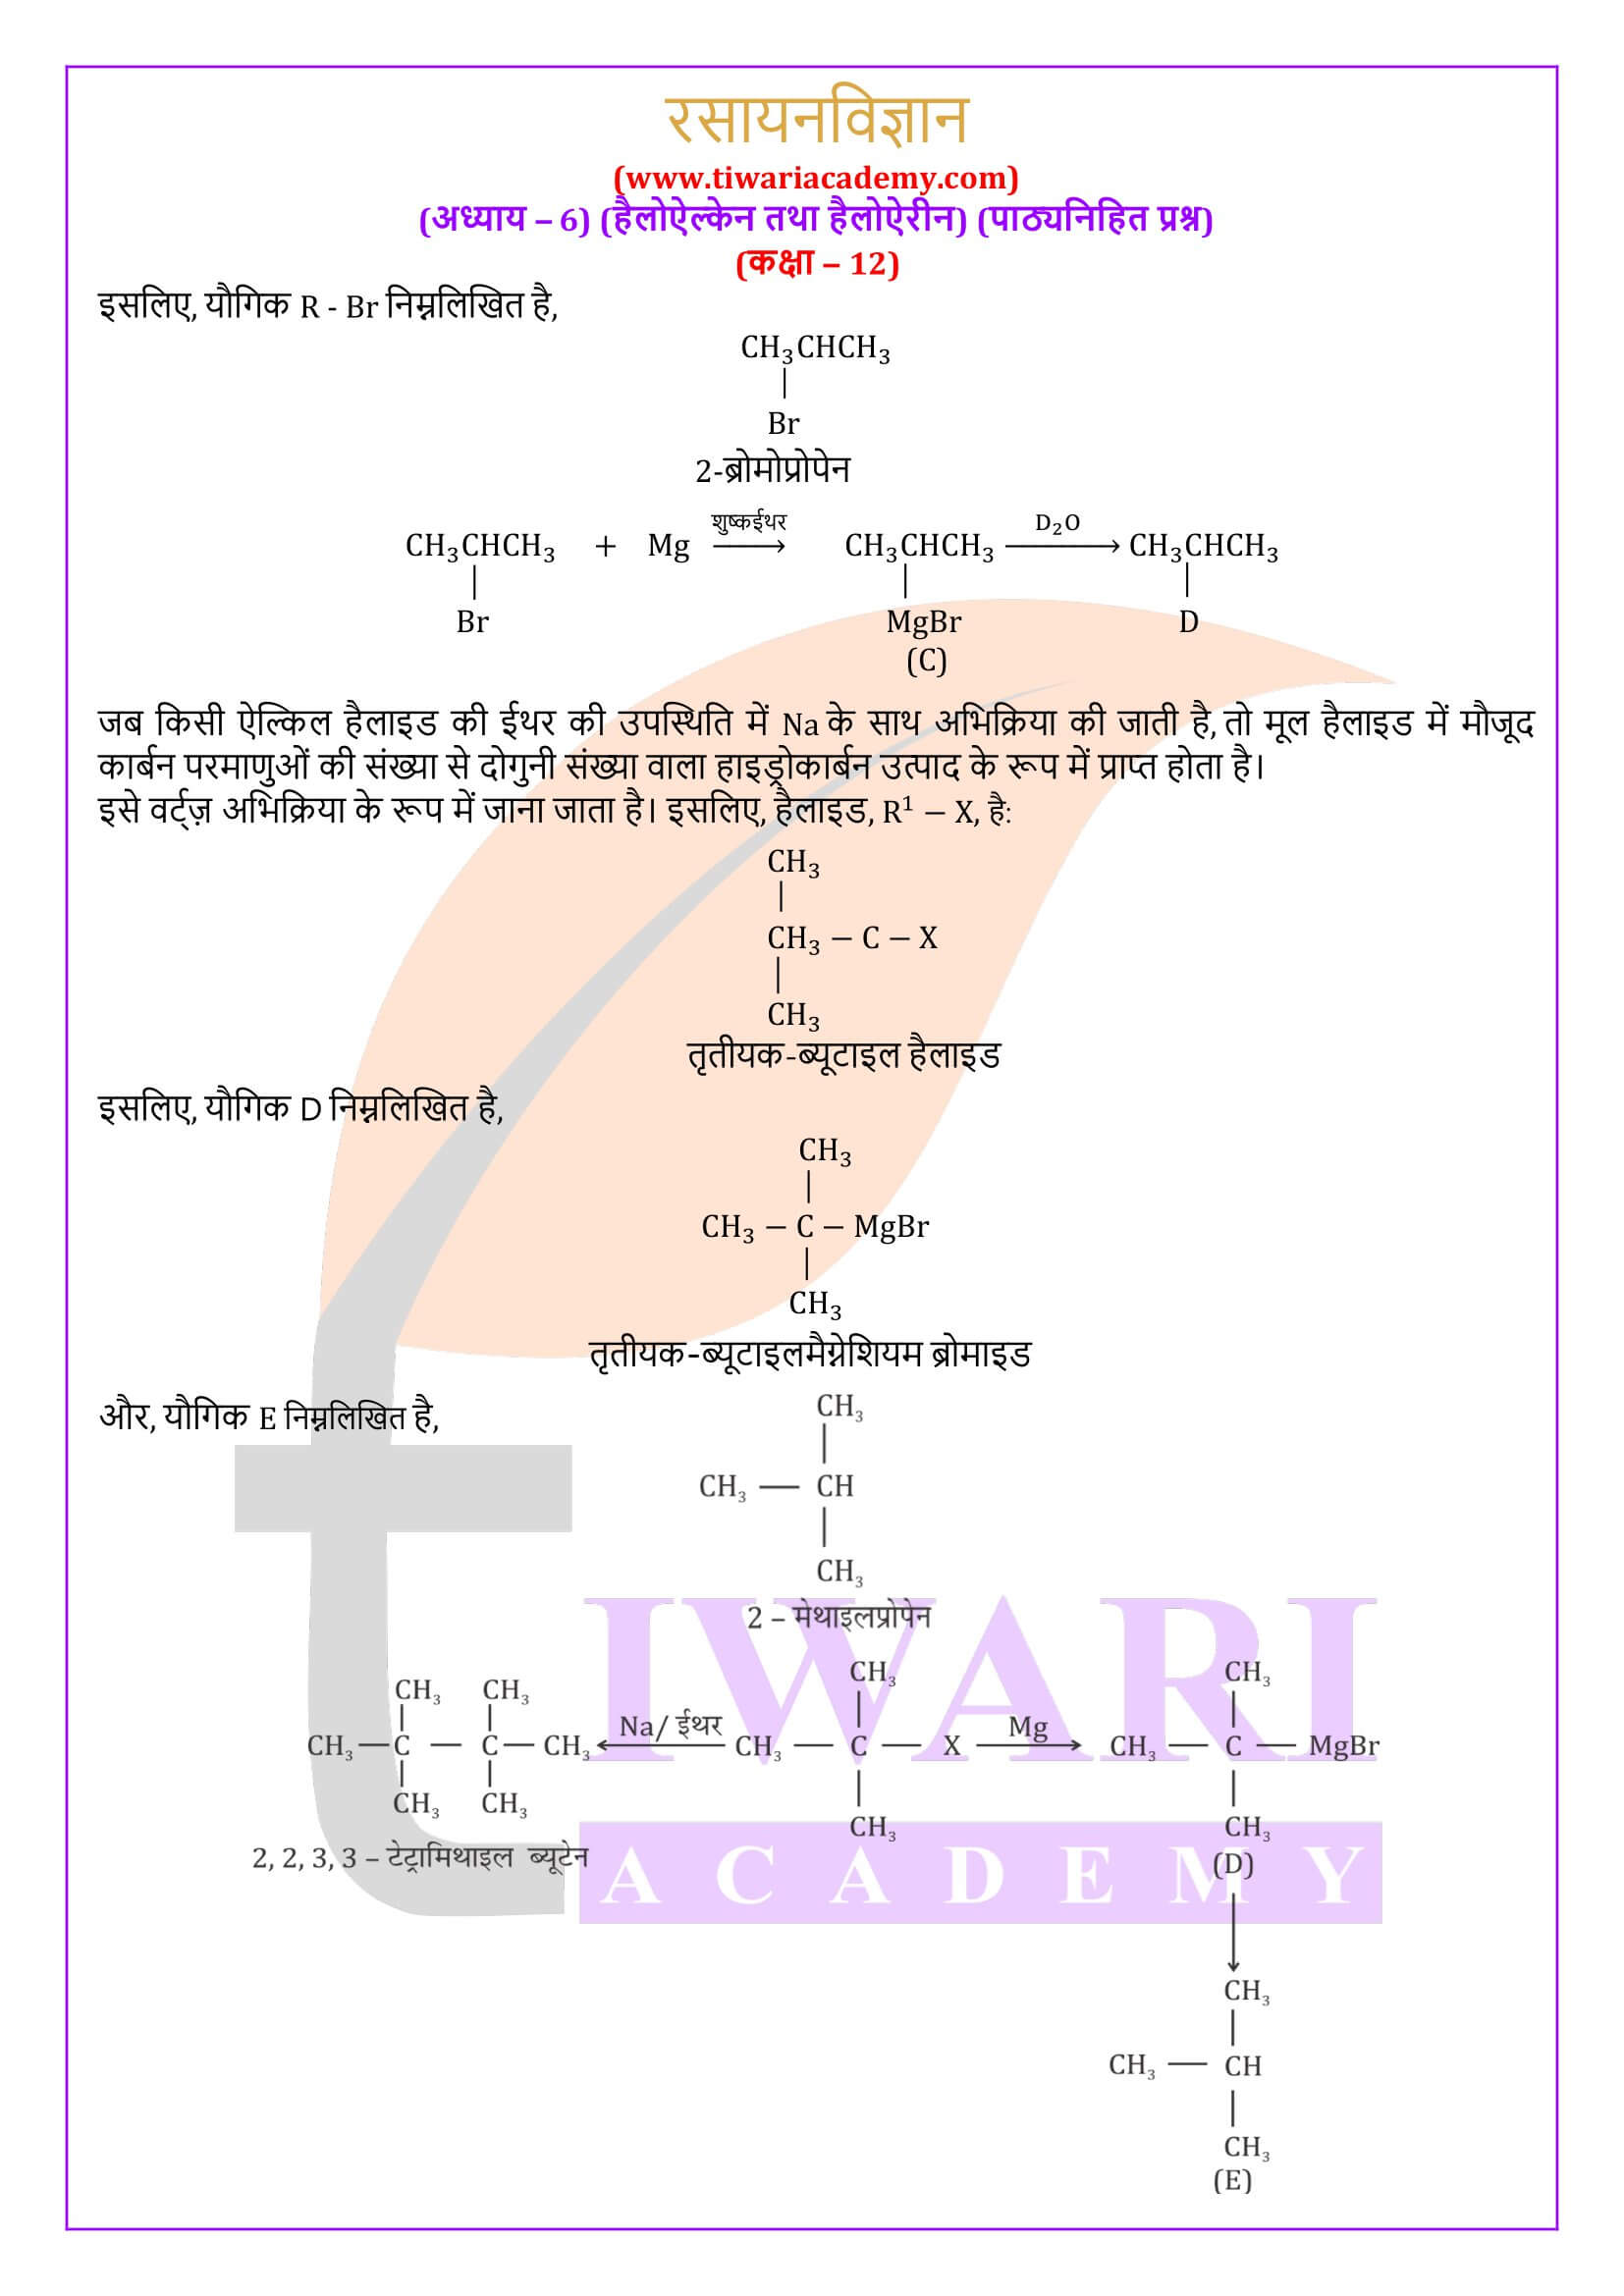 कक्षा 12 रसायन विज्ञान अध्याय 6 पाठ्यनिहित के हल हिंदी में